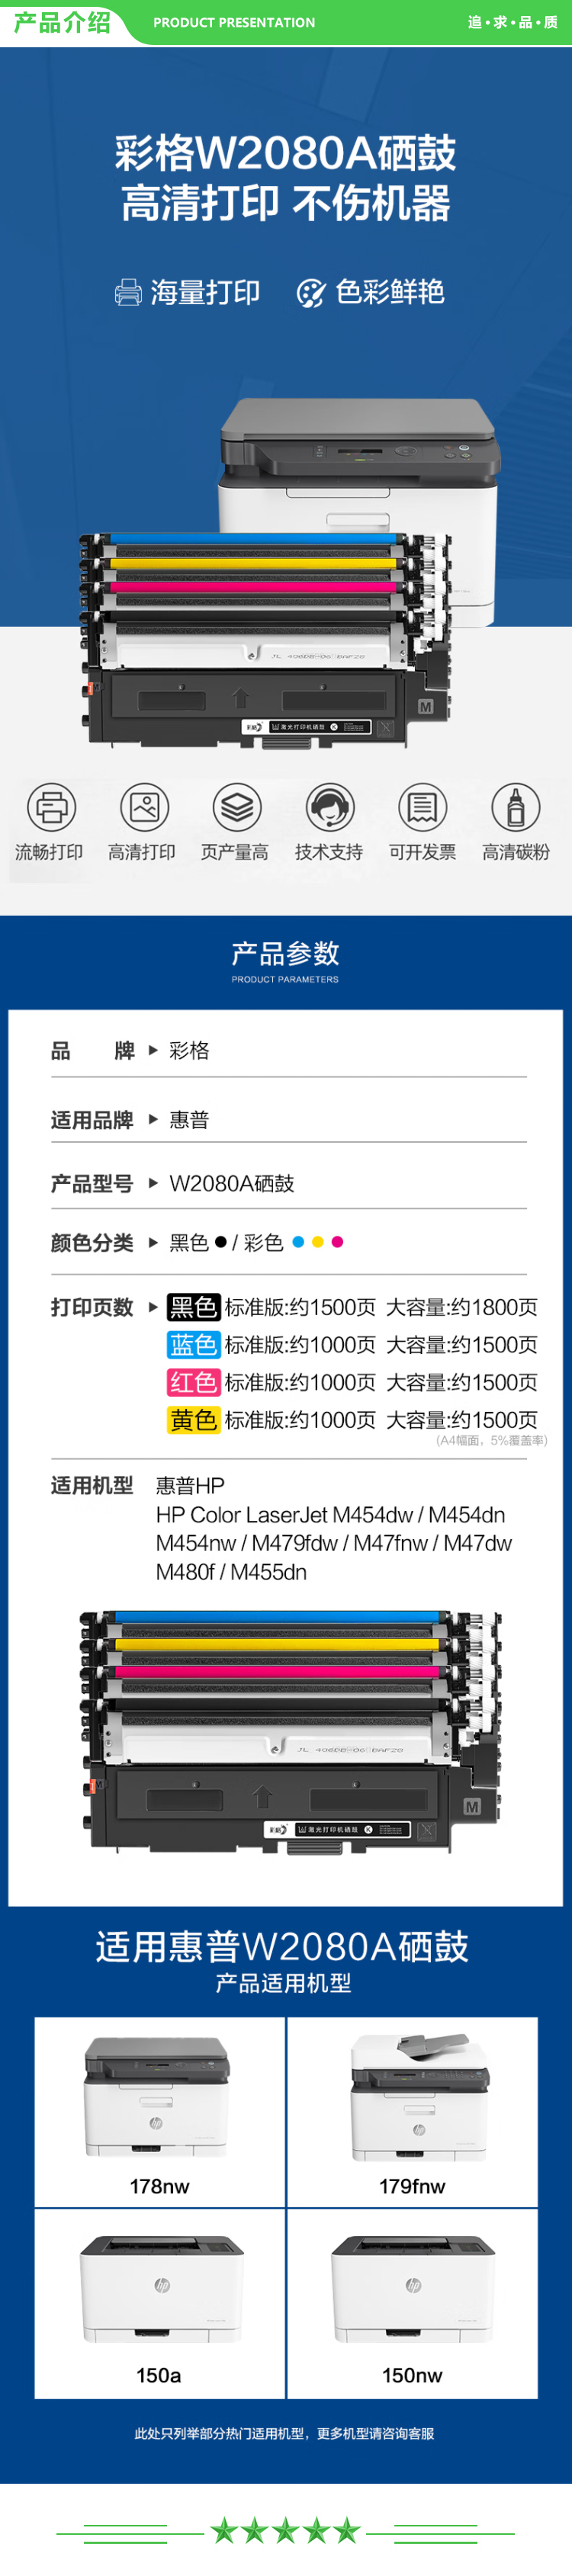 彩格 W2080A蓝色粉盒 1500页 大容量版 适用惠普hp178nw 179fnw 150a 150w 118a 彩色激光打印机.jpg